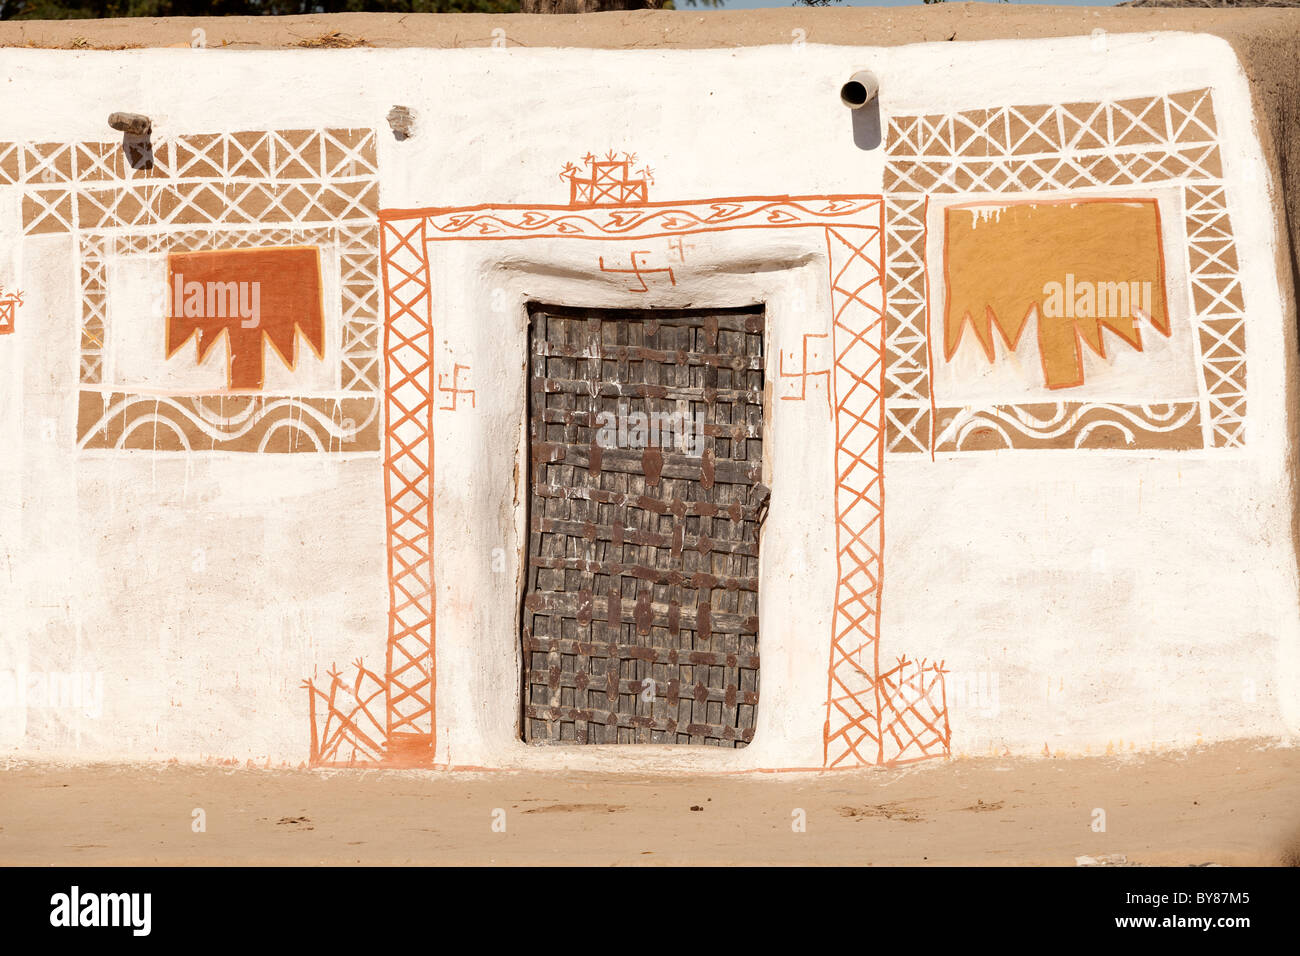 Indien, Rajasthan, Thar Wüste, traditionellen Dorf nach Hause gestrichene Wände Stockfoto